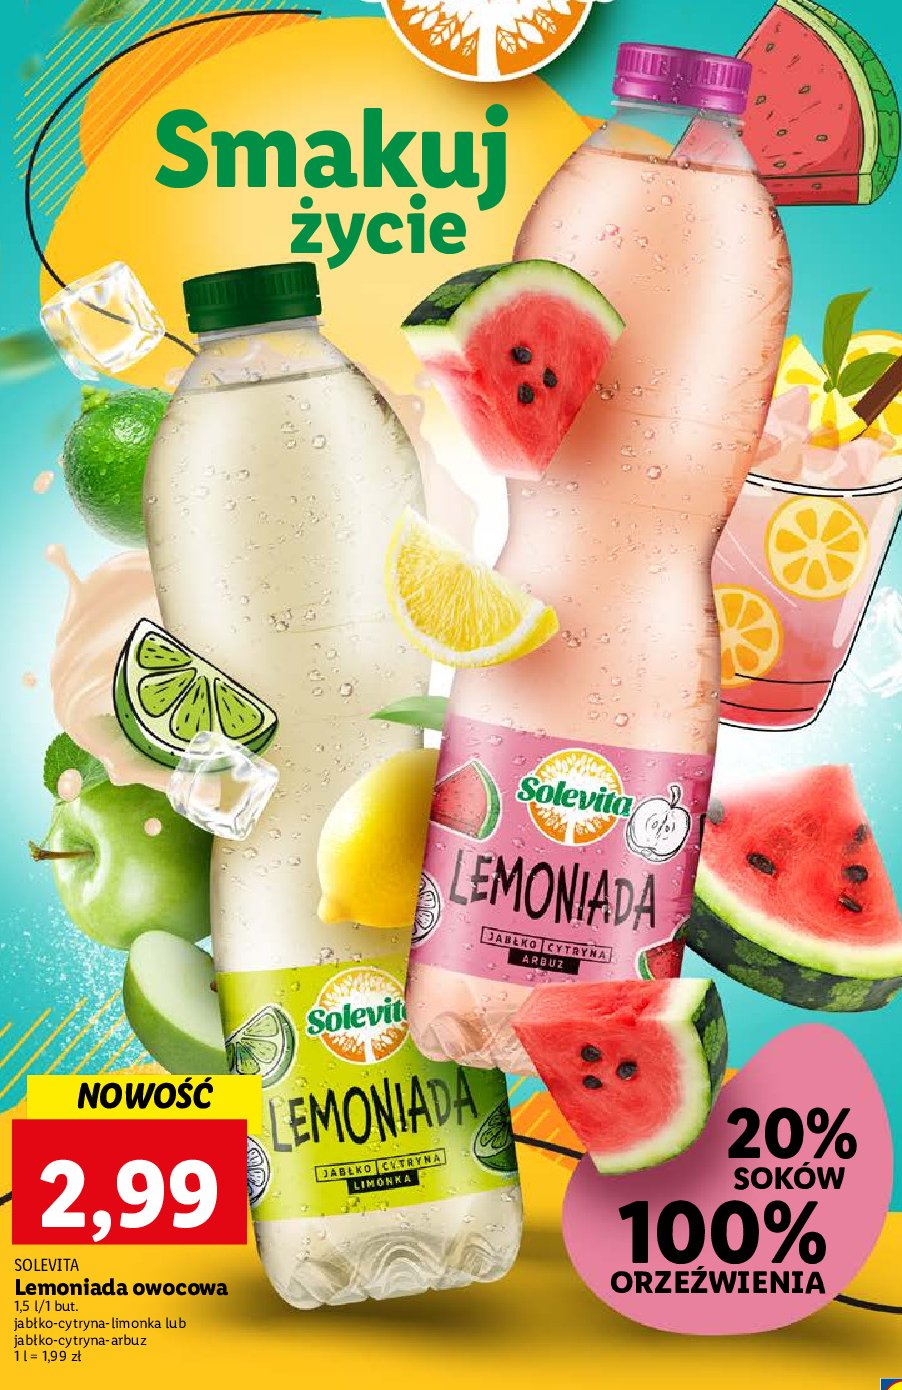 Lemoniada cytrynowo-limonkowa Solevita promocja